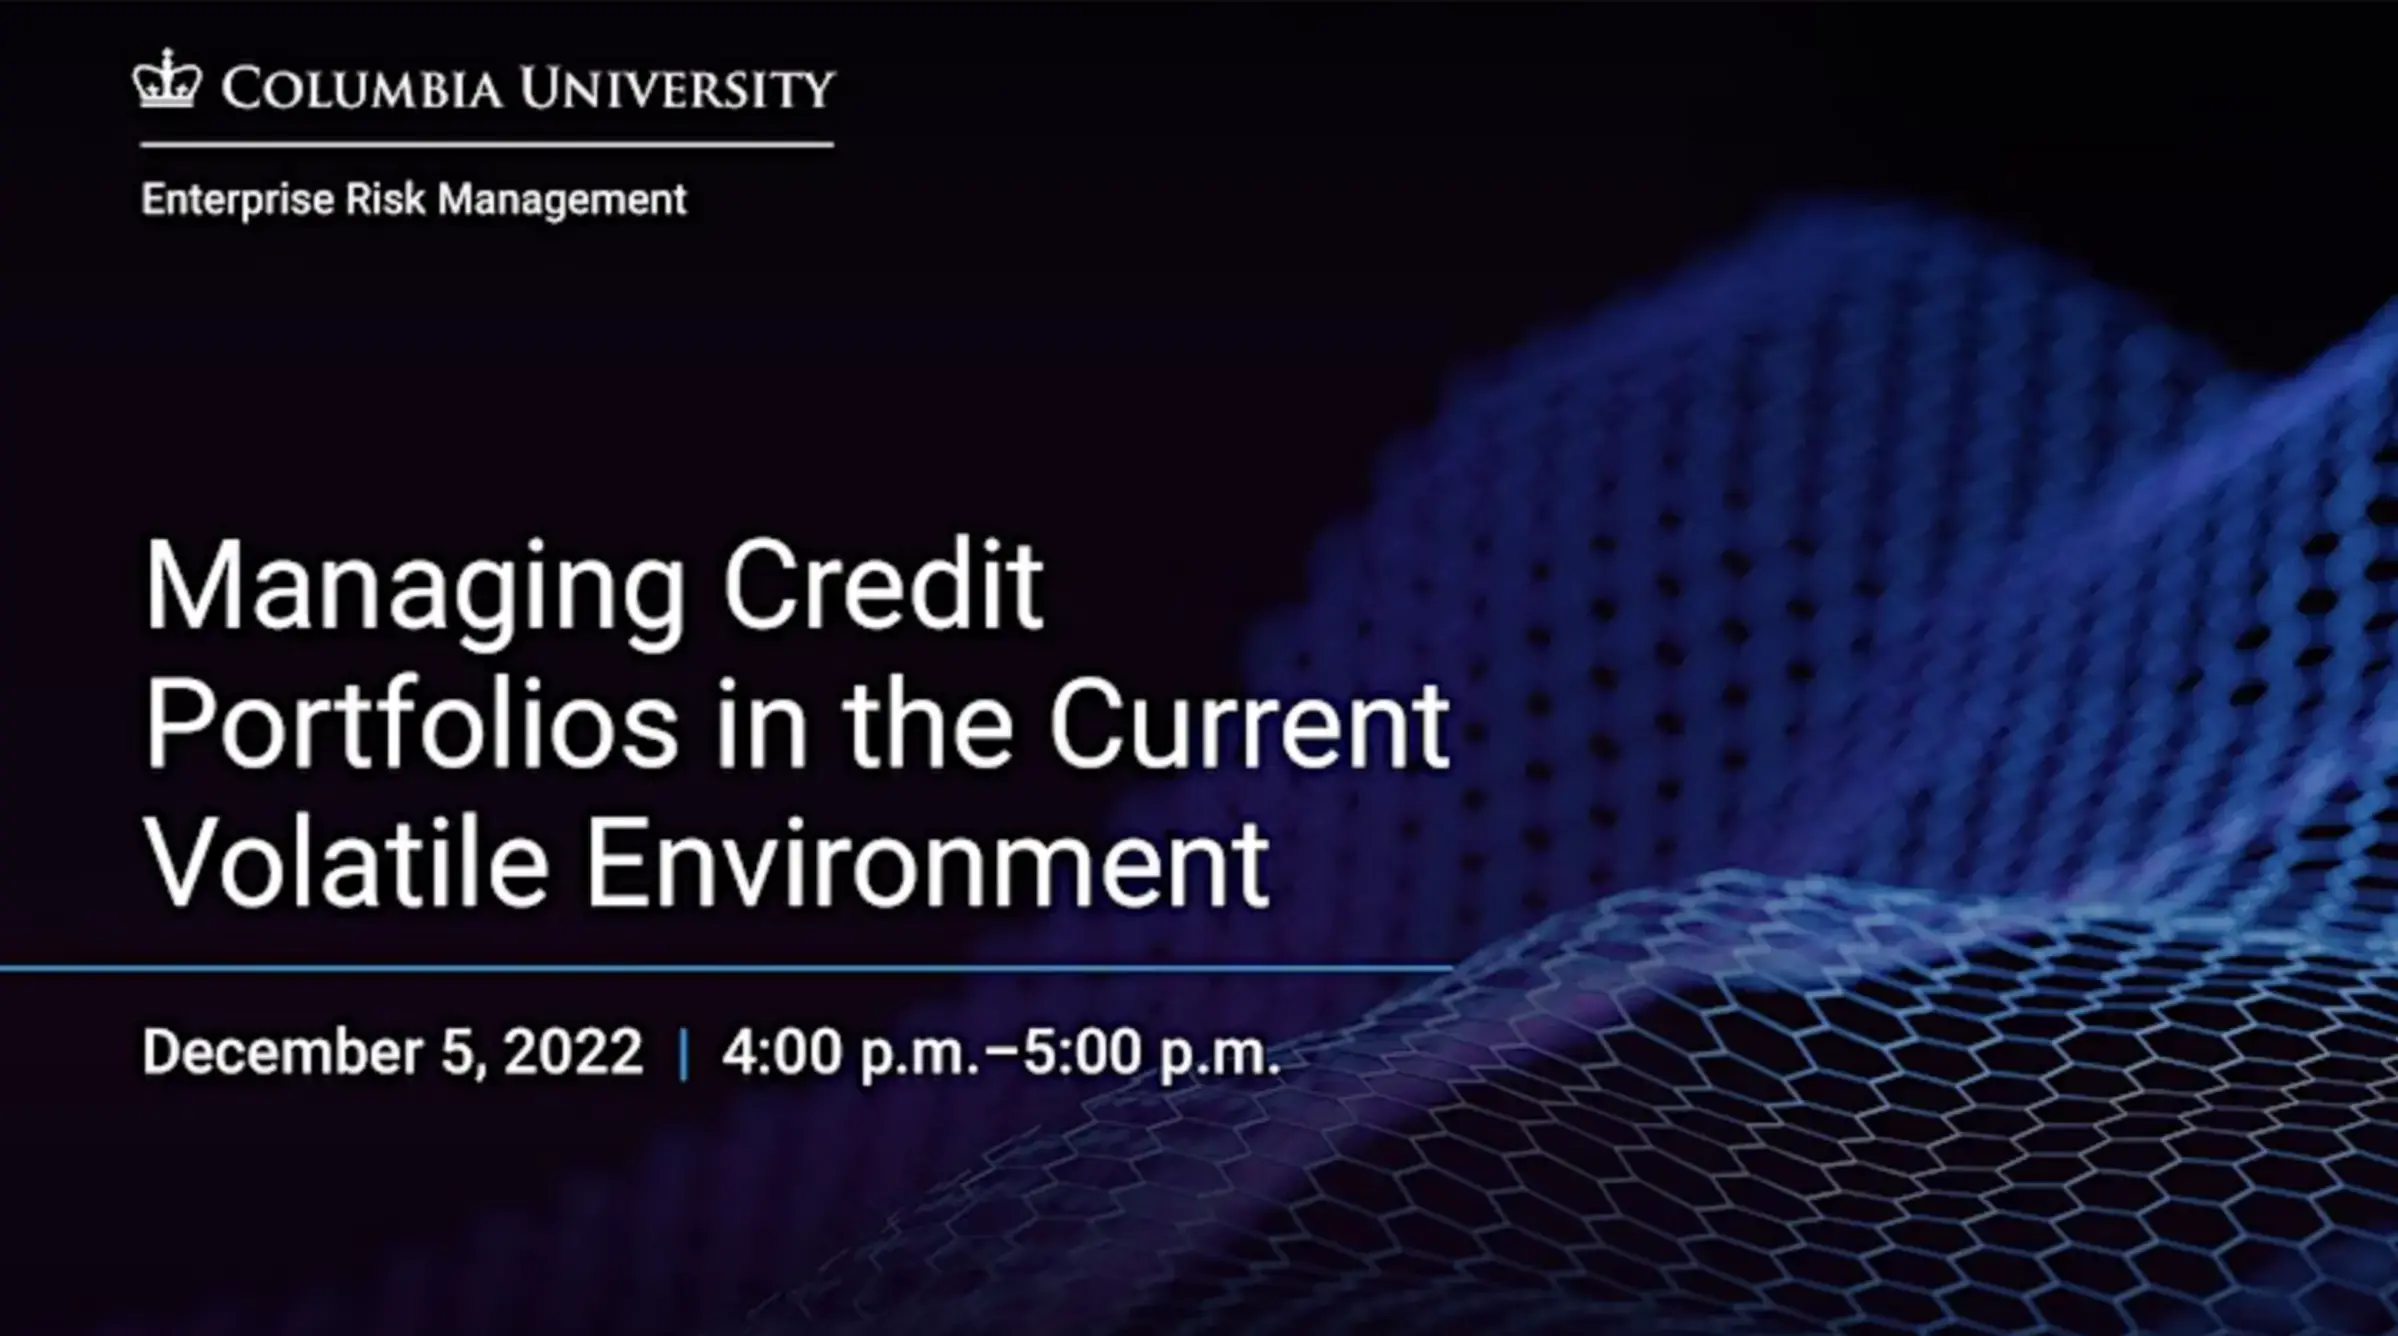 Managing Credit Portfolios in the Current Volatile Environment